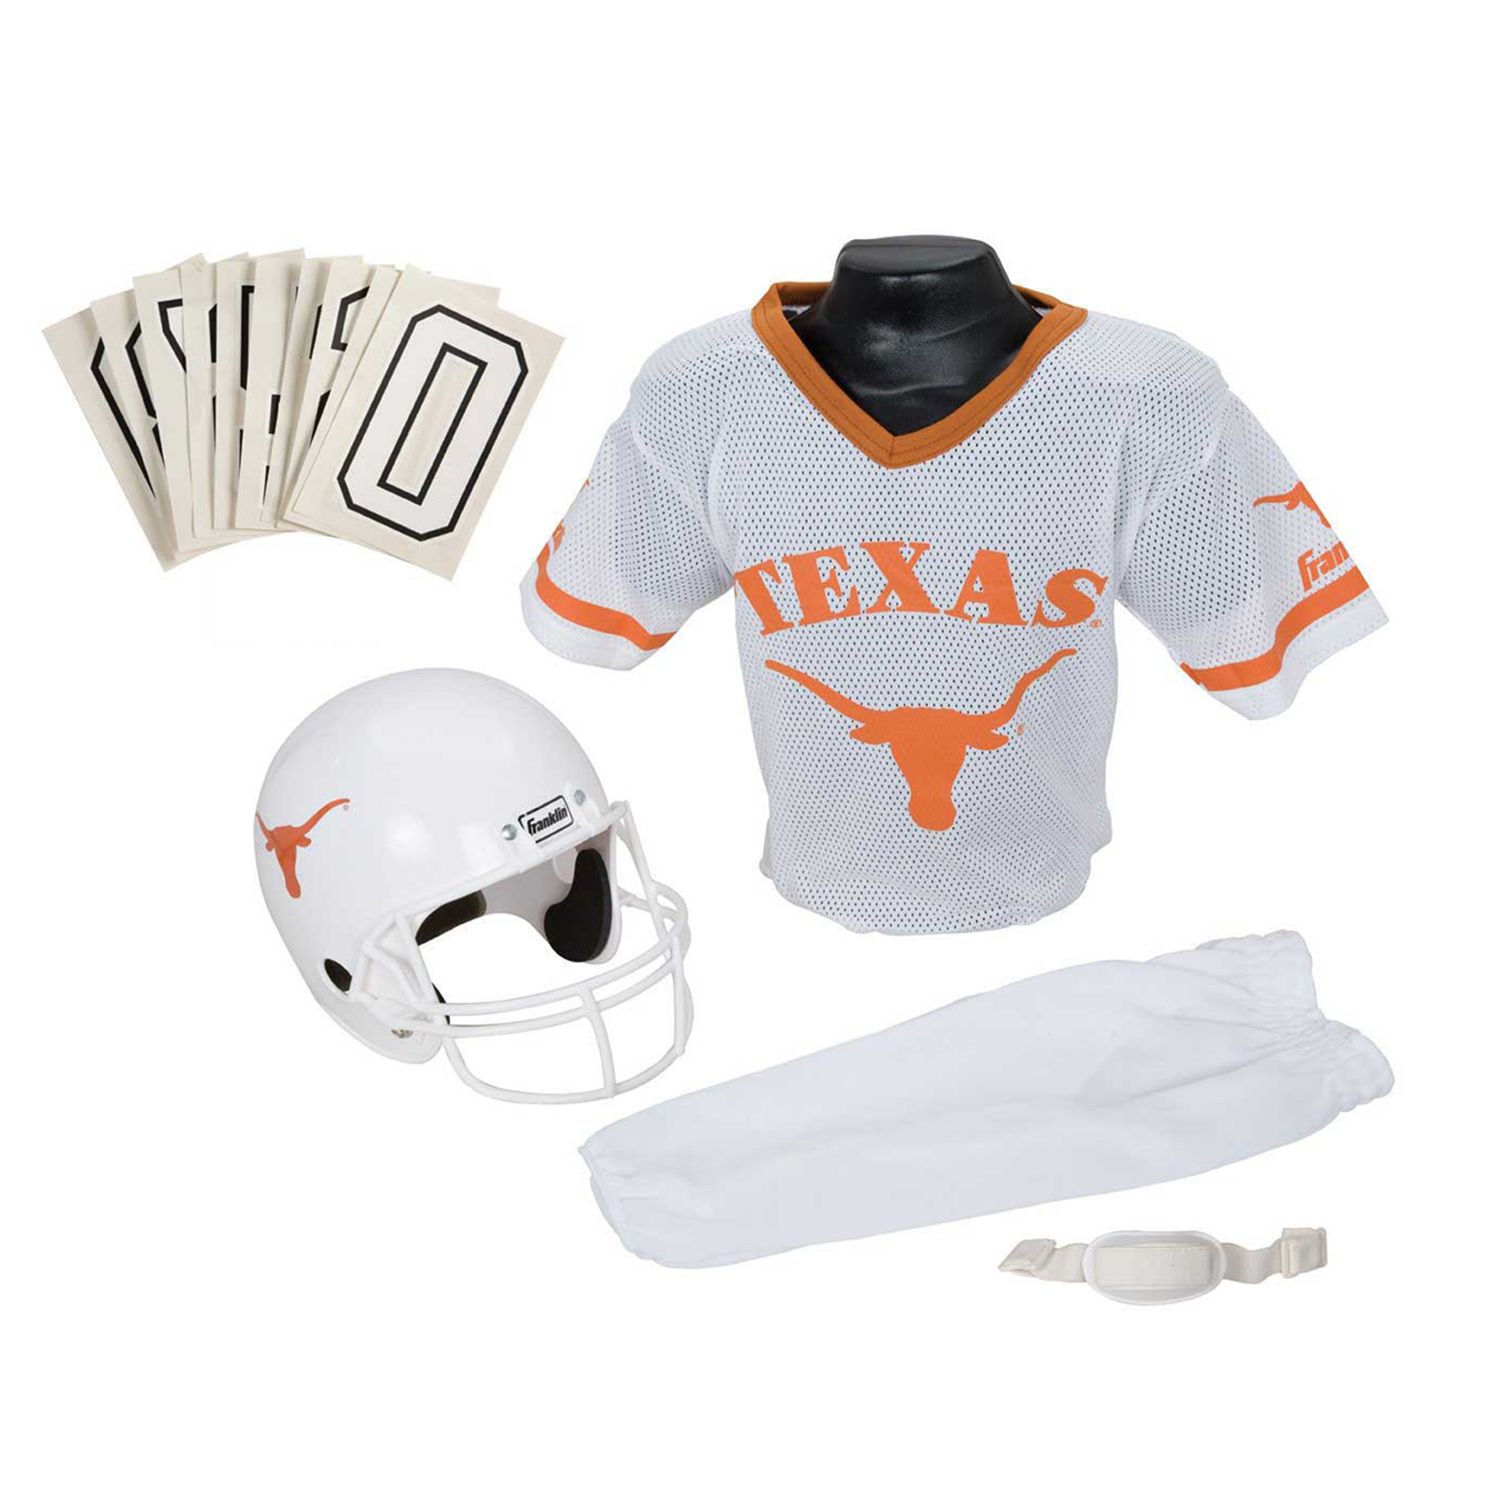 Texas Longhorns NFL jersey